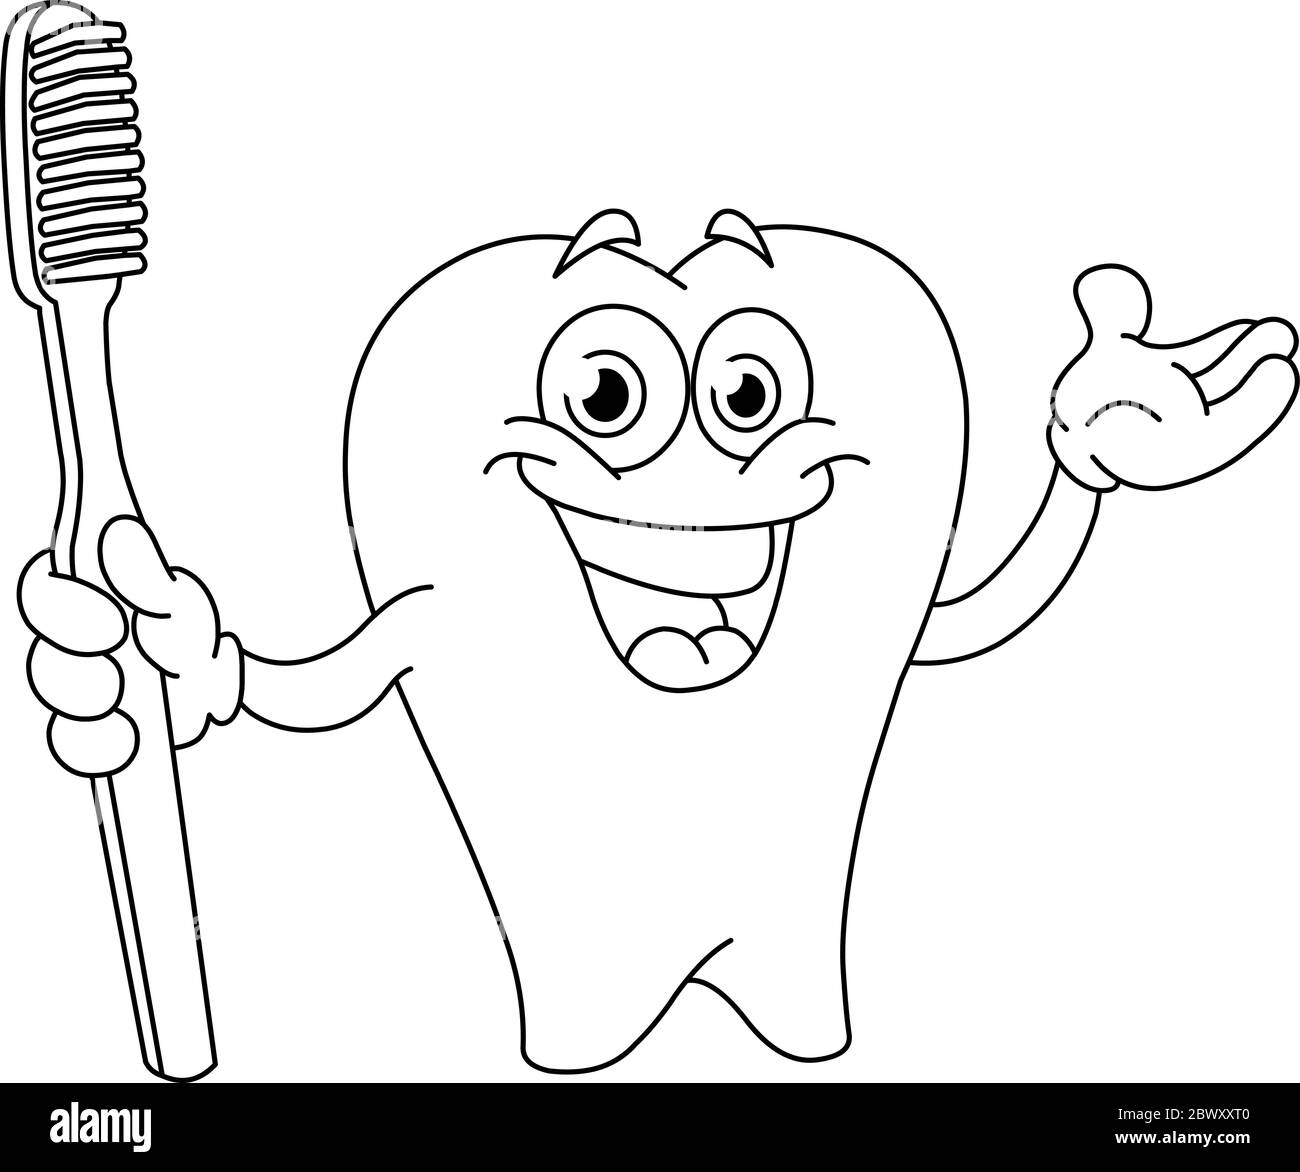 Une dent dessinée avec contour tenant une brosse à dents. Page de coloriage d'illustration vectorielle. Illustration de Vecteur